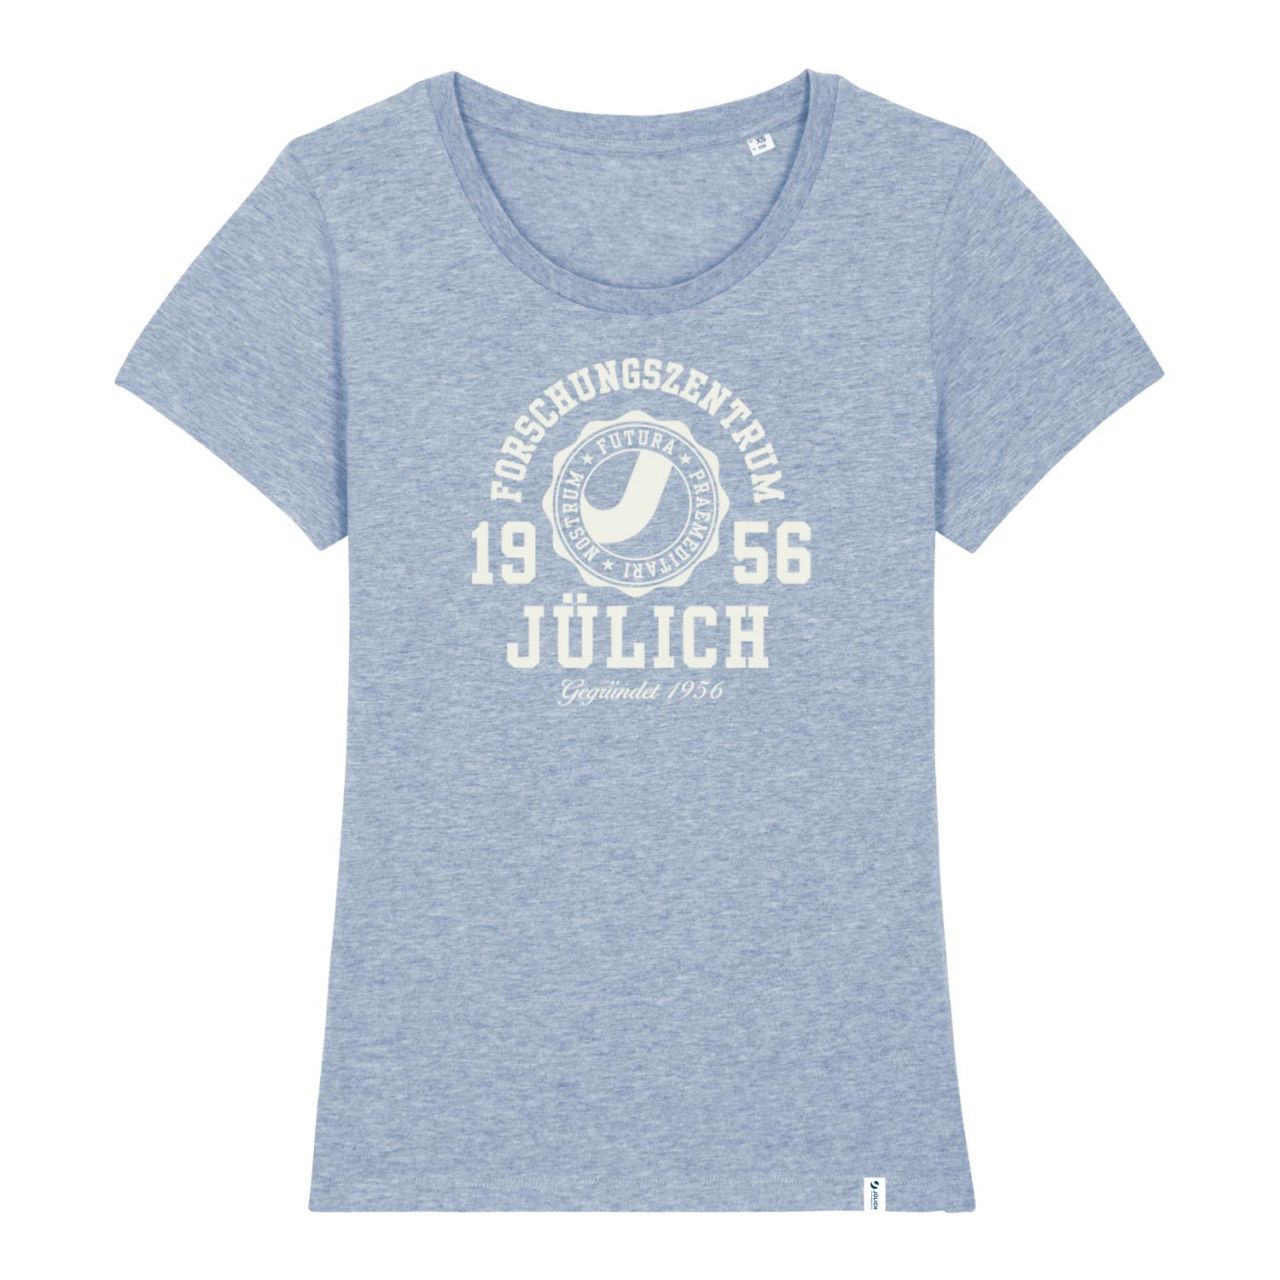 Women's Organic T-Shirt, cream heather blue, marshall.flock.white